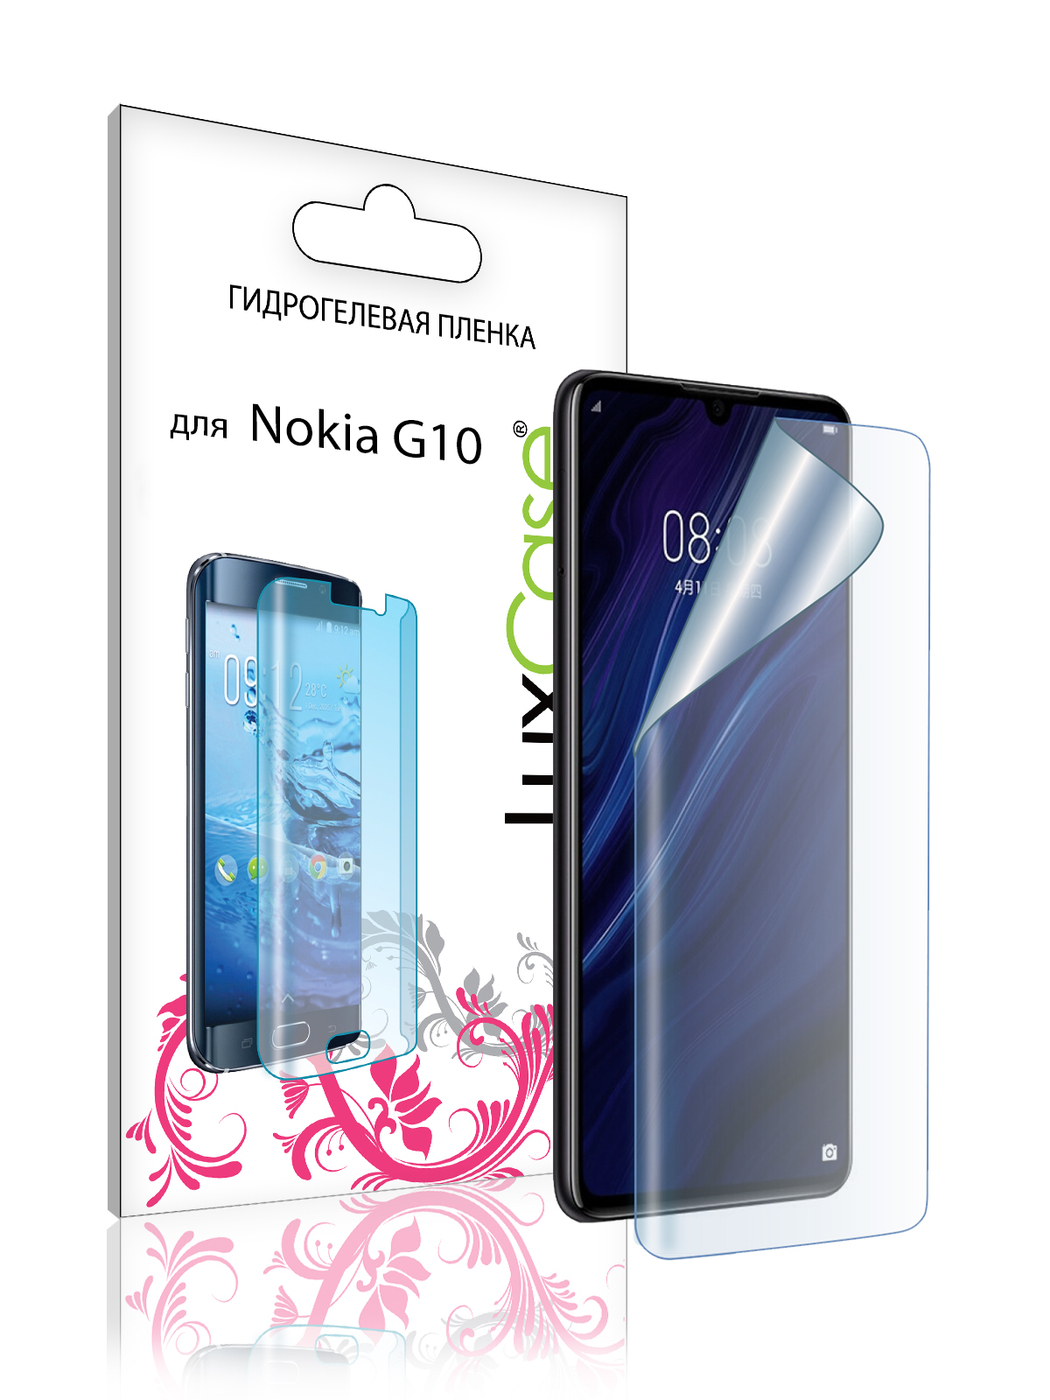 Пленка гидрогелевая LuxCase для Nokia G20 Front Transparent 86392 гидрогелевая пленка с вырезом под камеру для нокиа с20 плюс nokia c20 plus